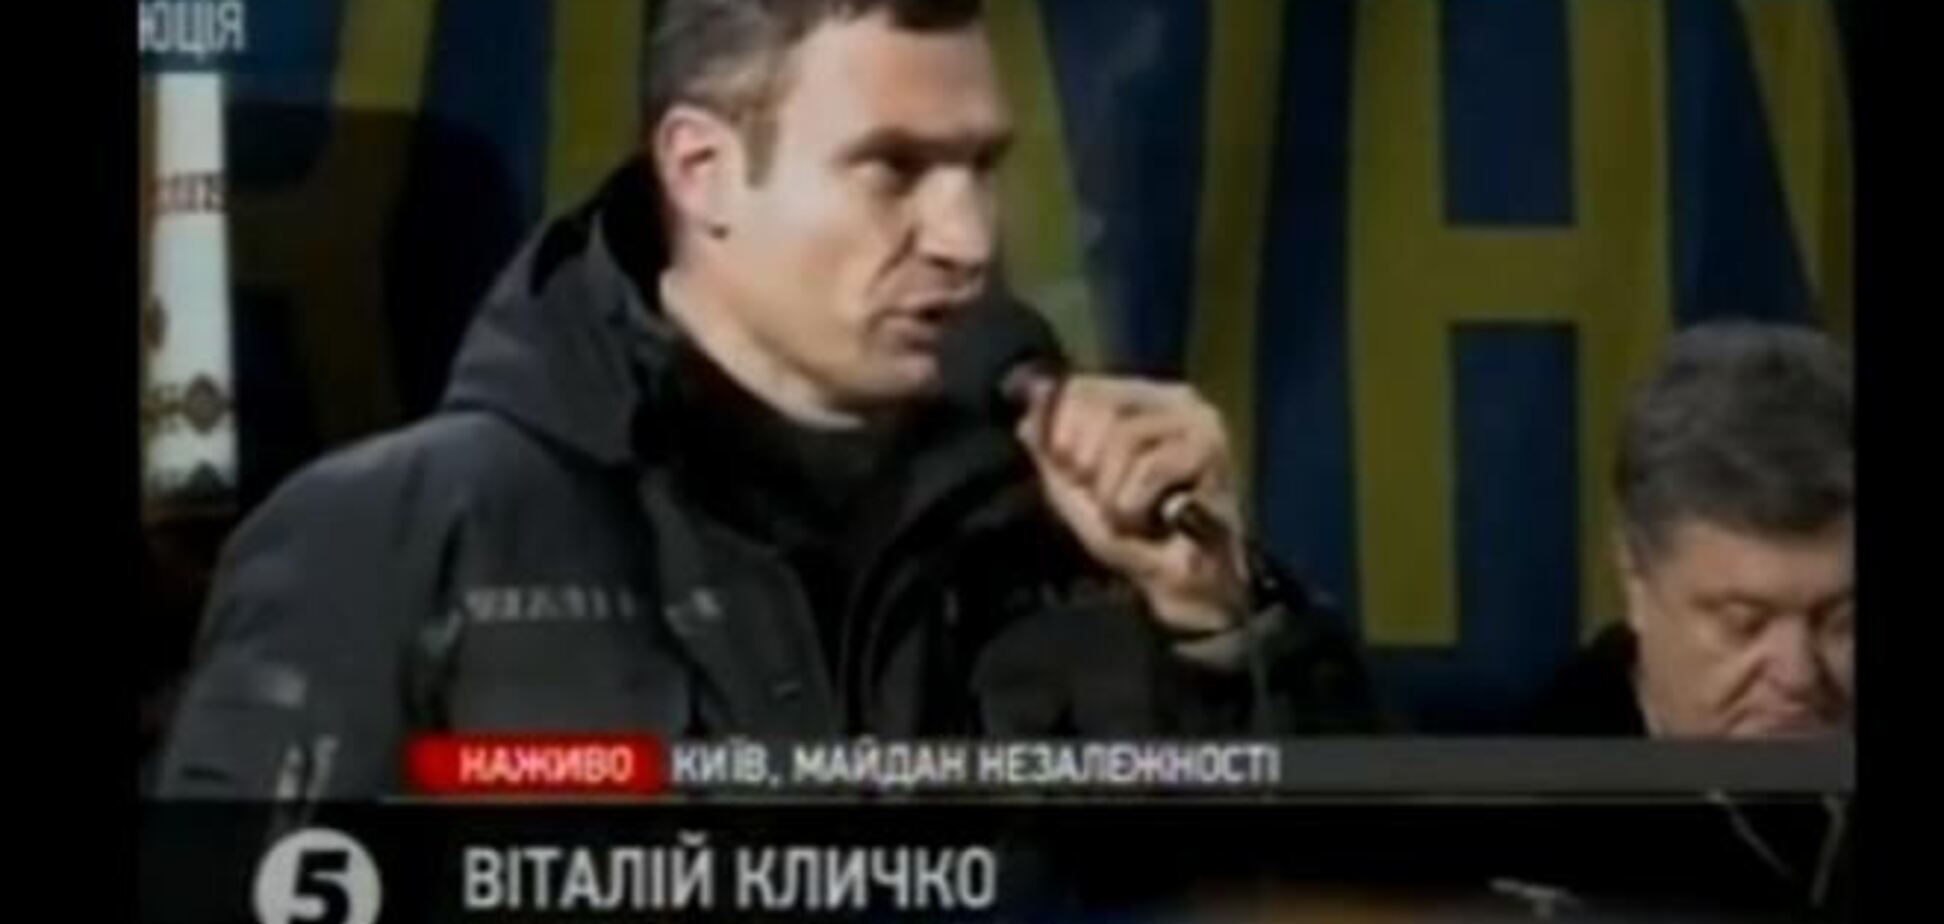 Кличко на Майдане умолчал о кадровых предложениях Януковича